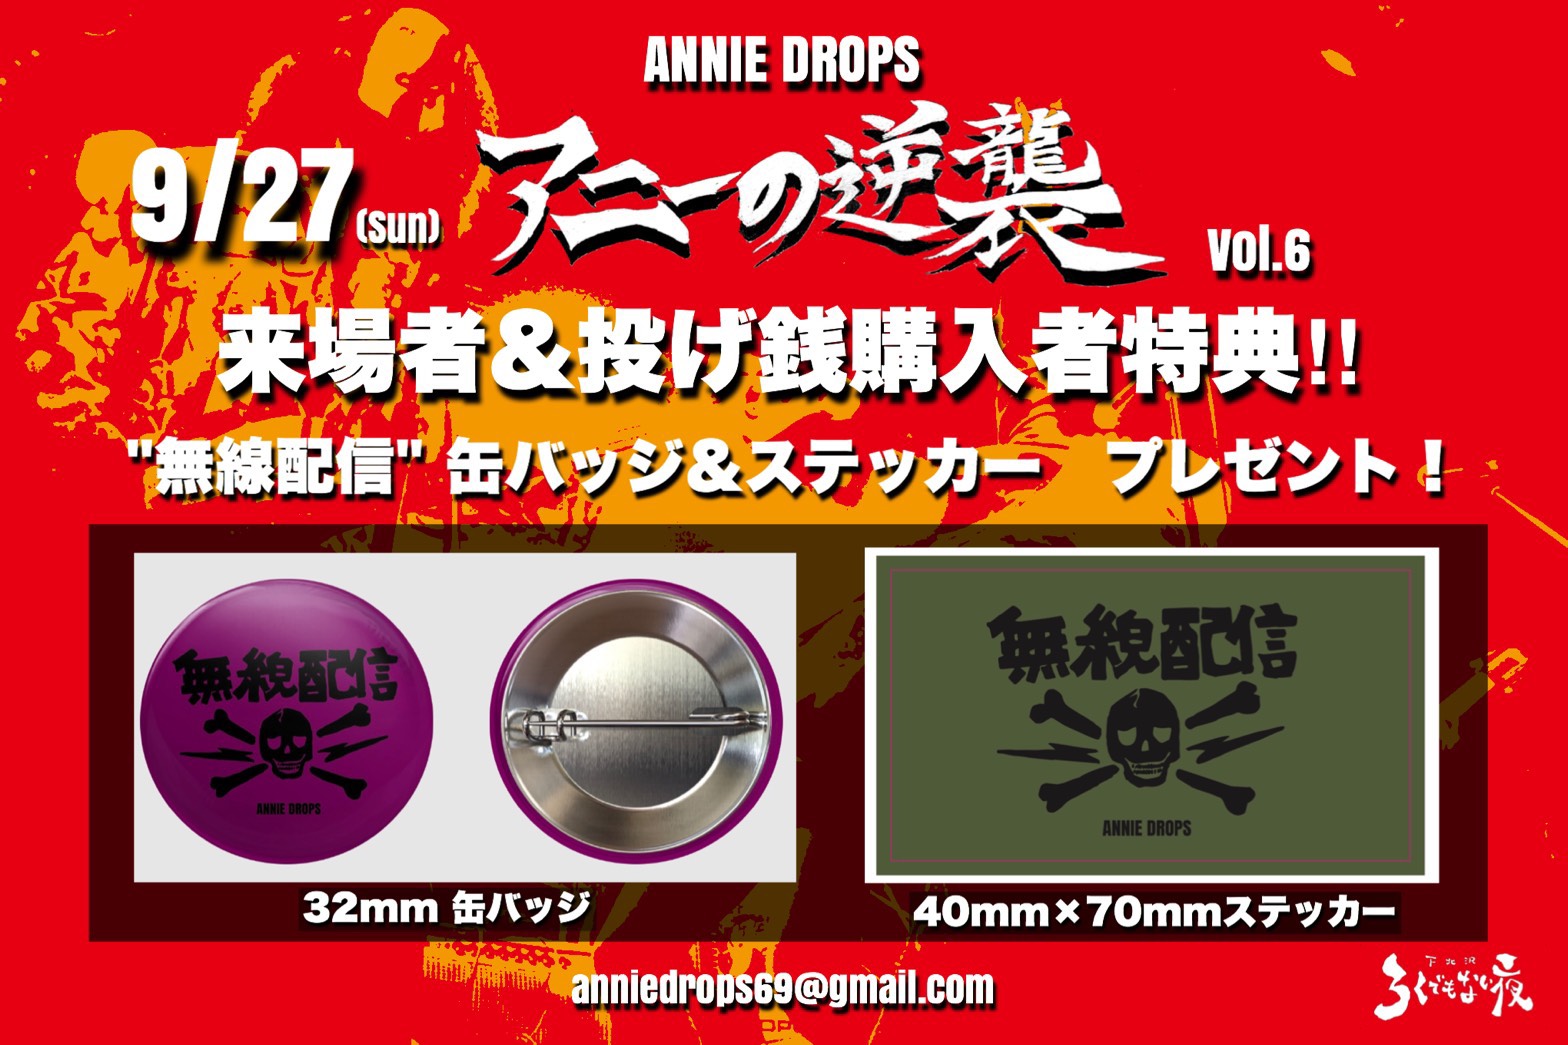 ANNIE DROPS presents 【アニーの逆襲 vol.6】